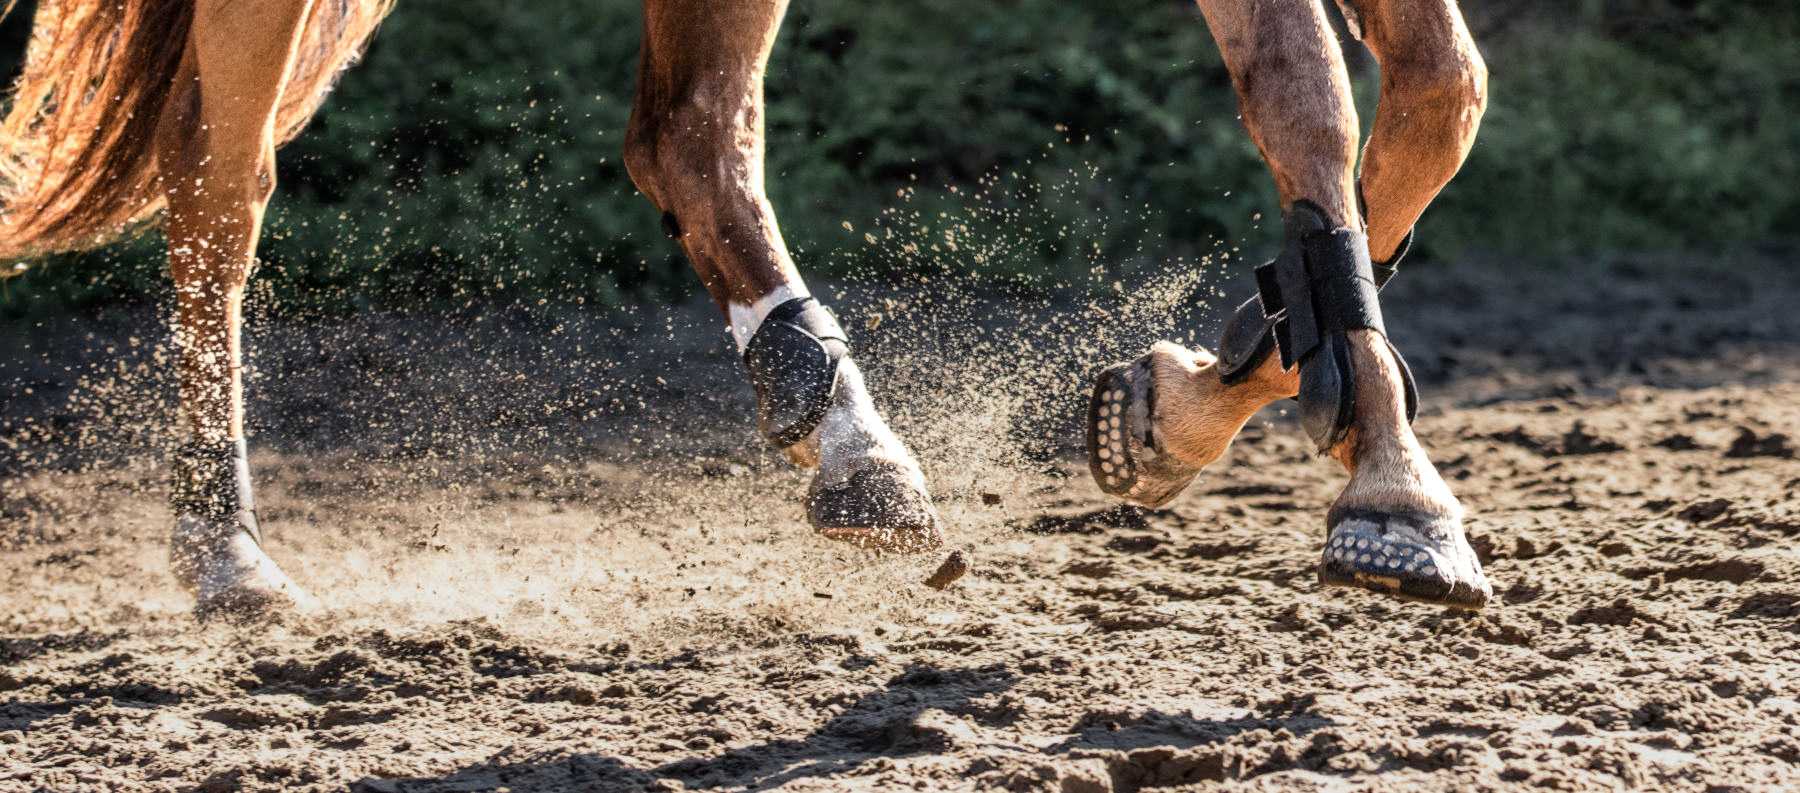 Pferdehufe von einem brauen Pferd mit geklebten Hufschutz auf Sandboden